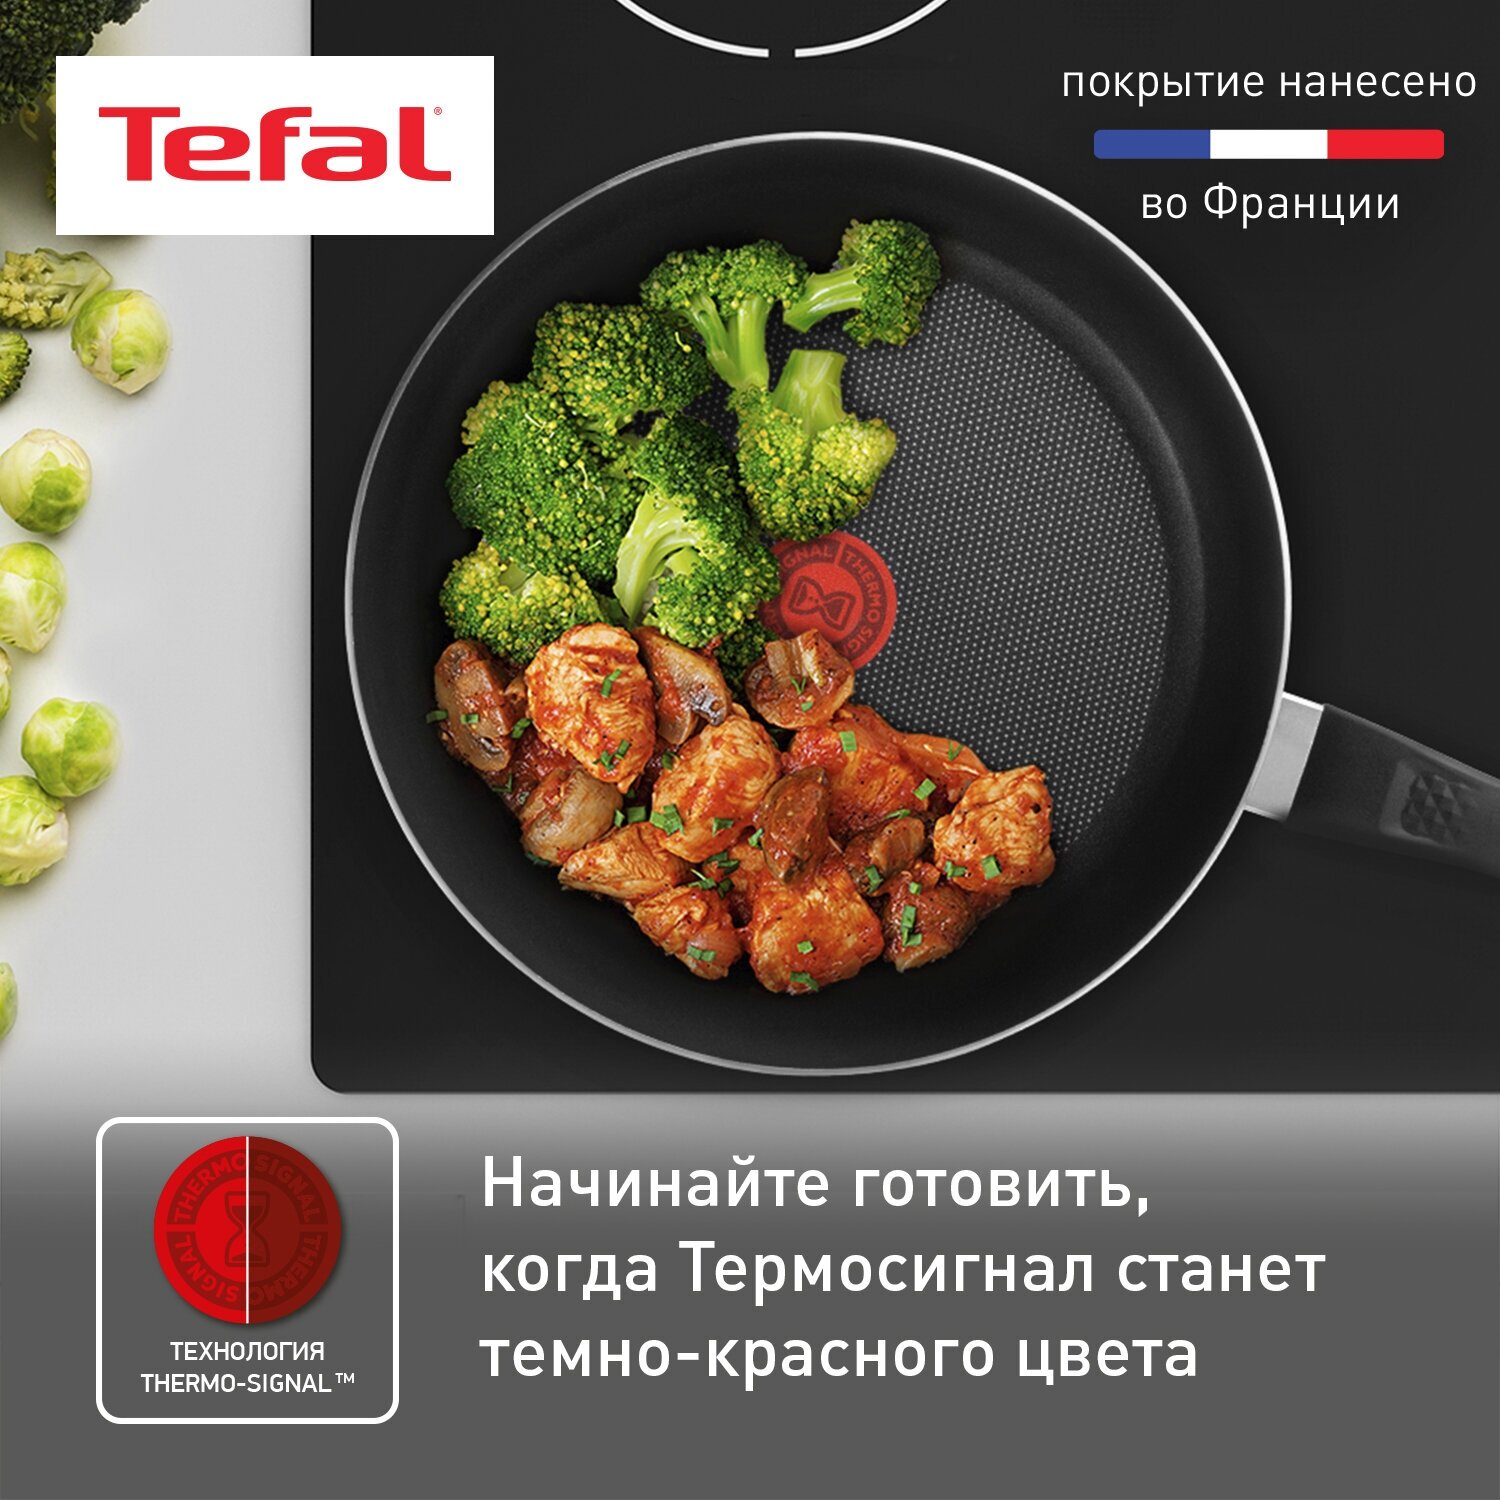 Сковорода Tefal Easy Plus 04237124, диаметр 24 см, с индикатором температуры, с антипригарным покрытием, для газовых, электрических плит